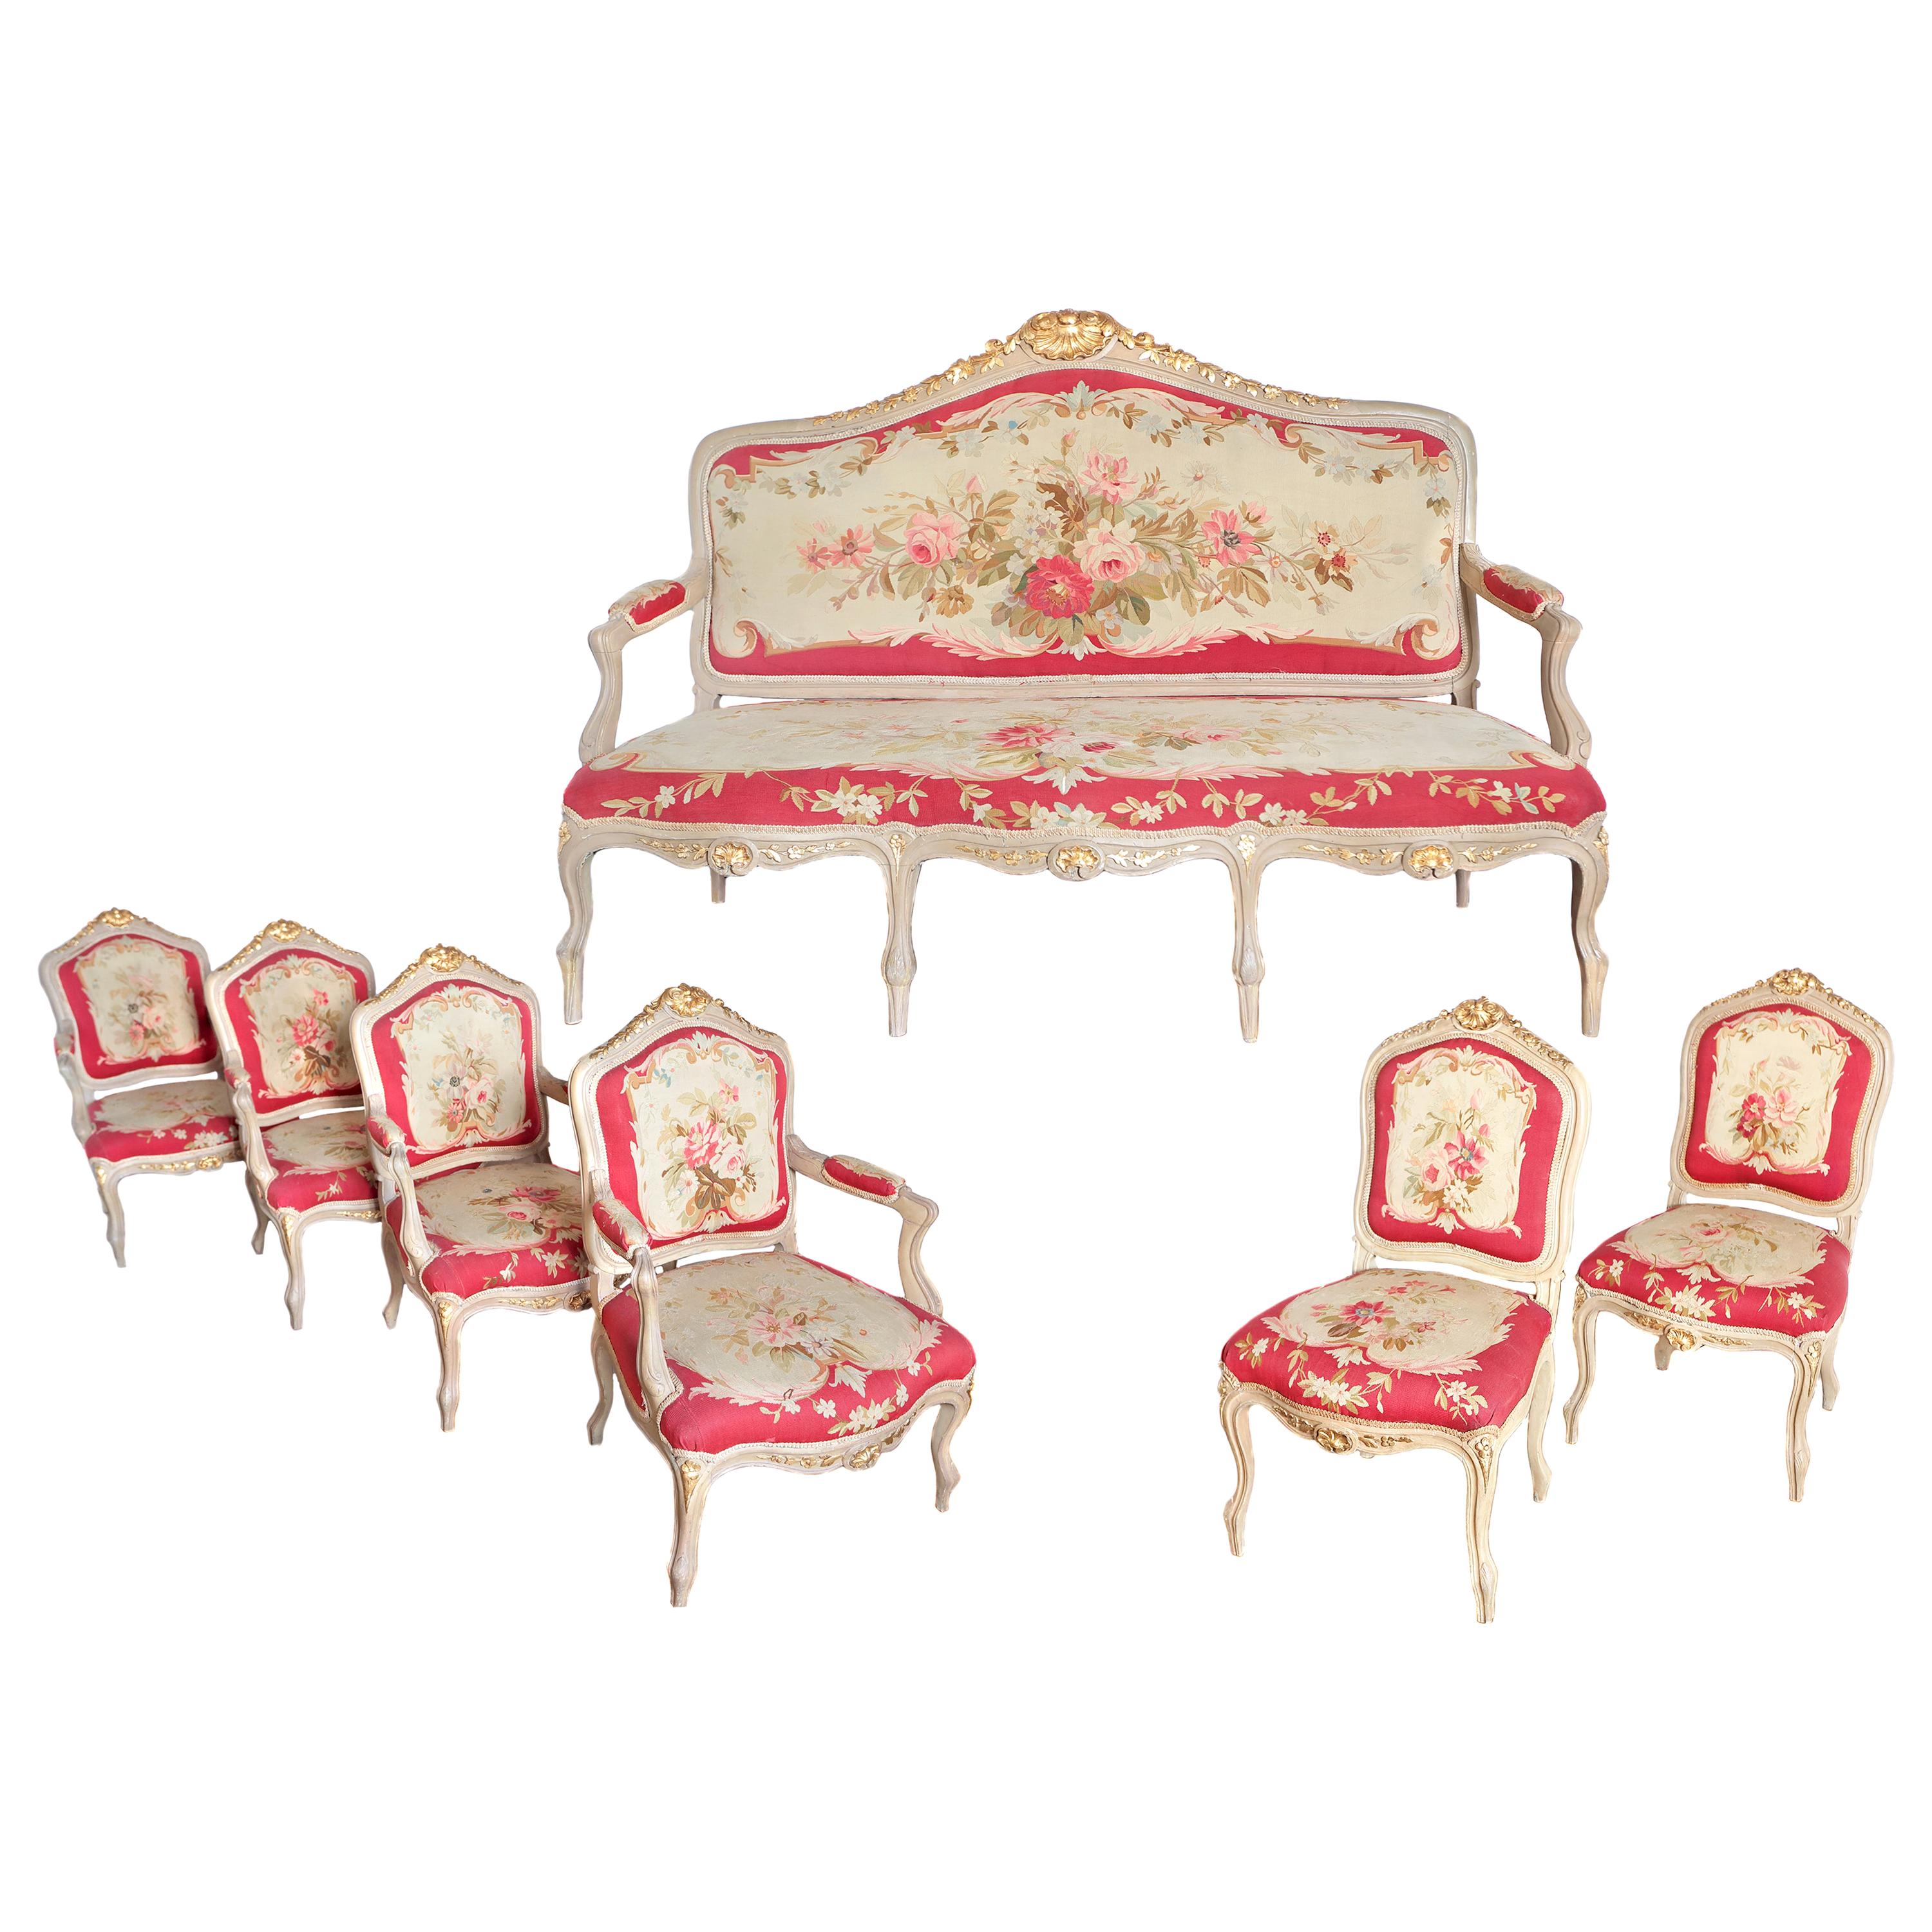 Grande suite de chaises et banquette en tapisserie d'Aubusson de style Louis XV du 19ème siècle